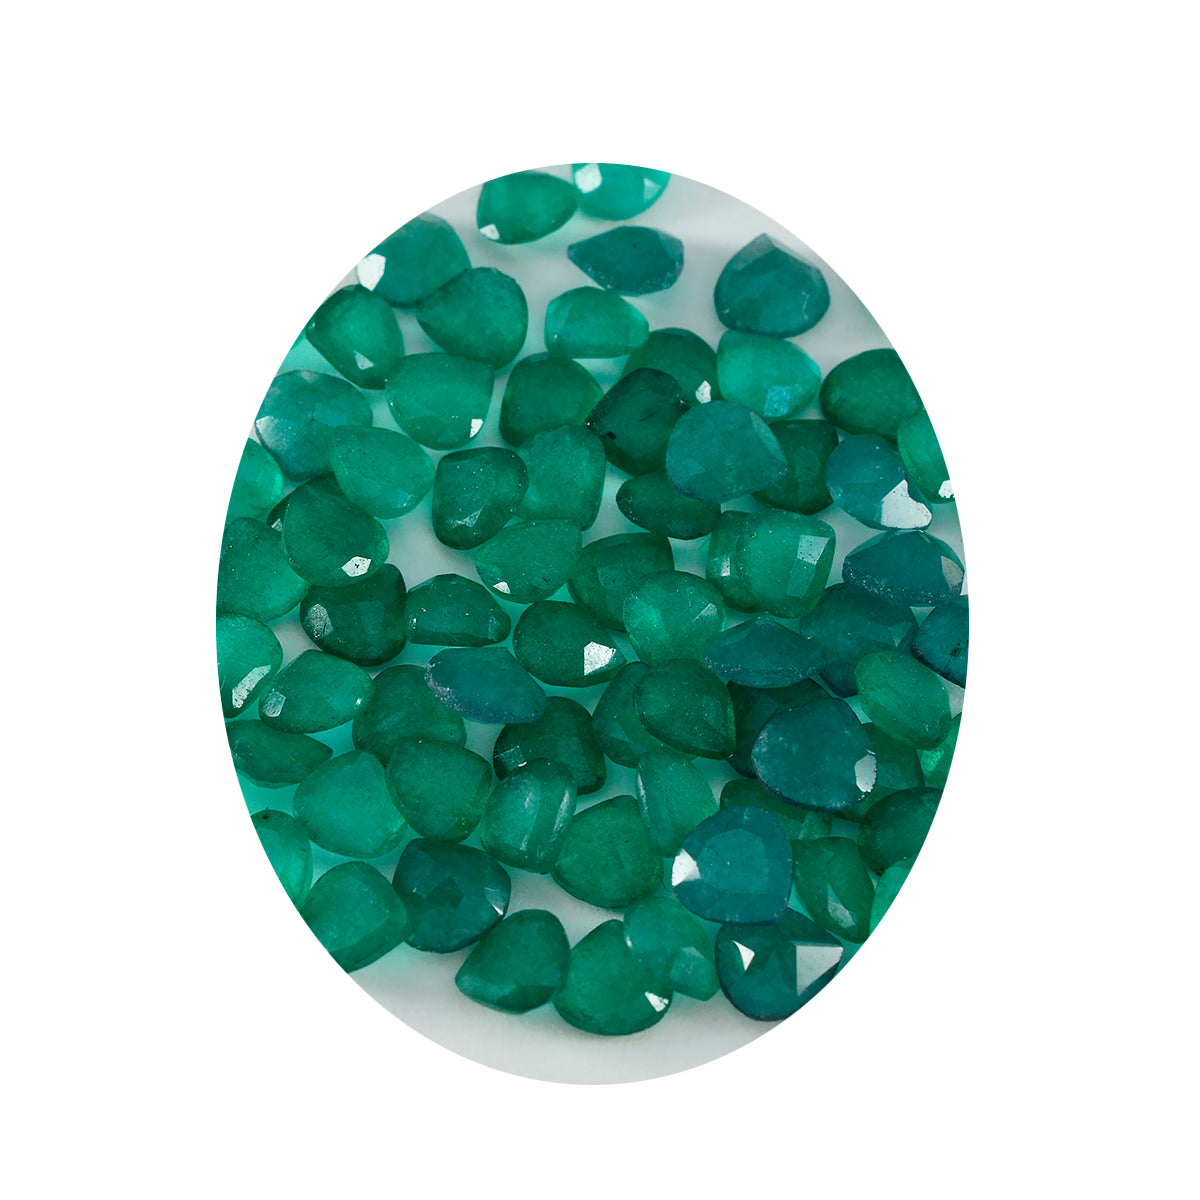 Riyogems 1 pièce de jaspe vert naturel à facettes 6x6mm en forme de cœur, pierre précieuse de qualité incroyable